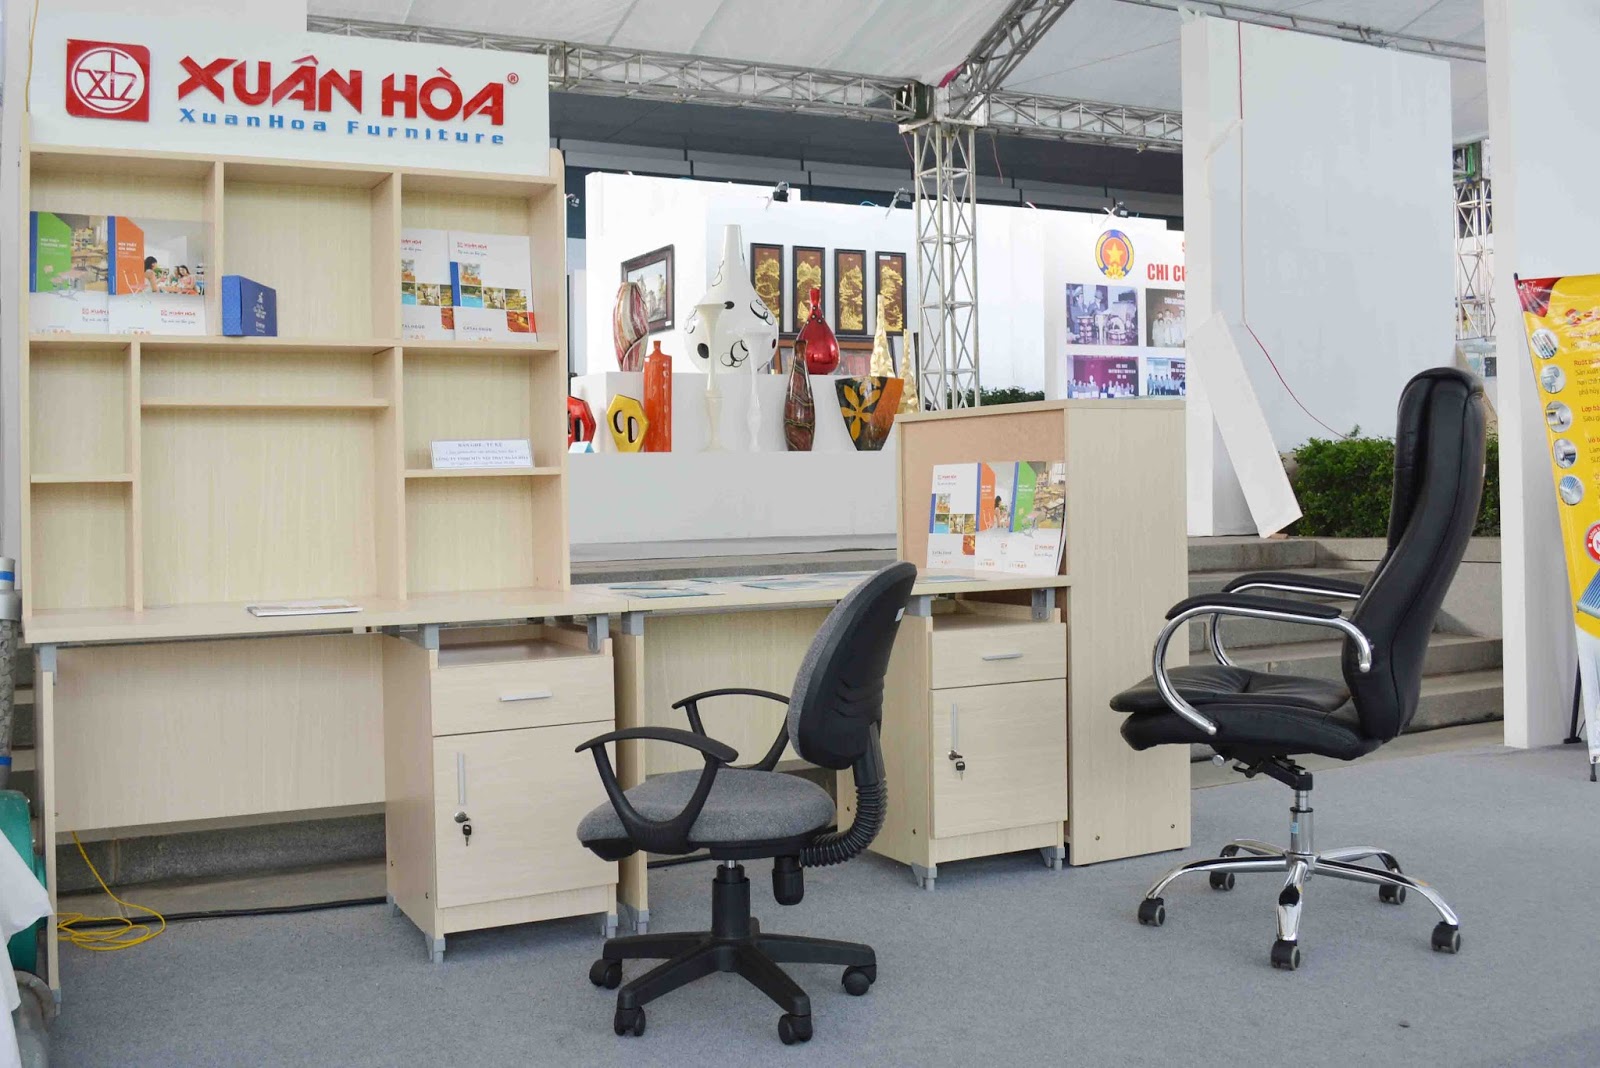 Nội thất văn phòng Xuân Hòa là một trong những thương hiệu nội thất hàng đầu tại Việt Nam, với những sản phẩm có chất lượng và giá cả đáng tin cậy. Không chỉ đổi mới và sáng tạo về thiết kế, mà nội thất văn phòng Xuân Hòa còn luôn cập nhật công nghệ hiện đại nhất, mang đến cho khách hàng trải nghiệm làm việc tuyệt vời nhất.